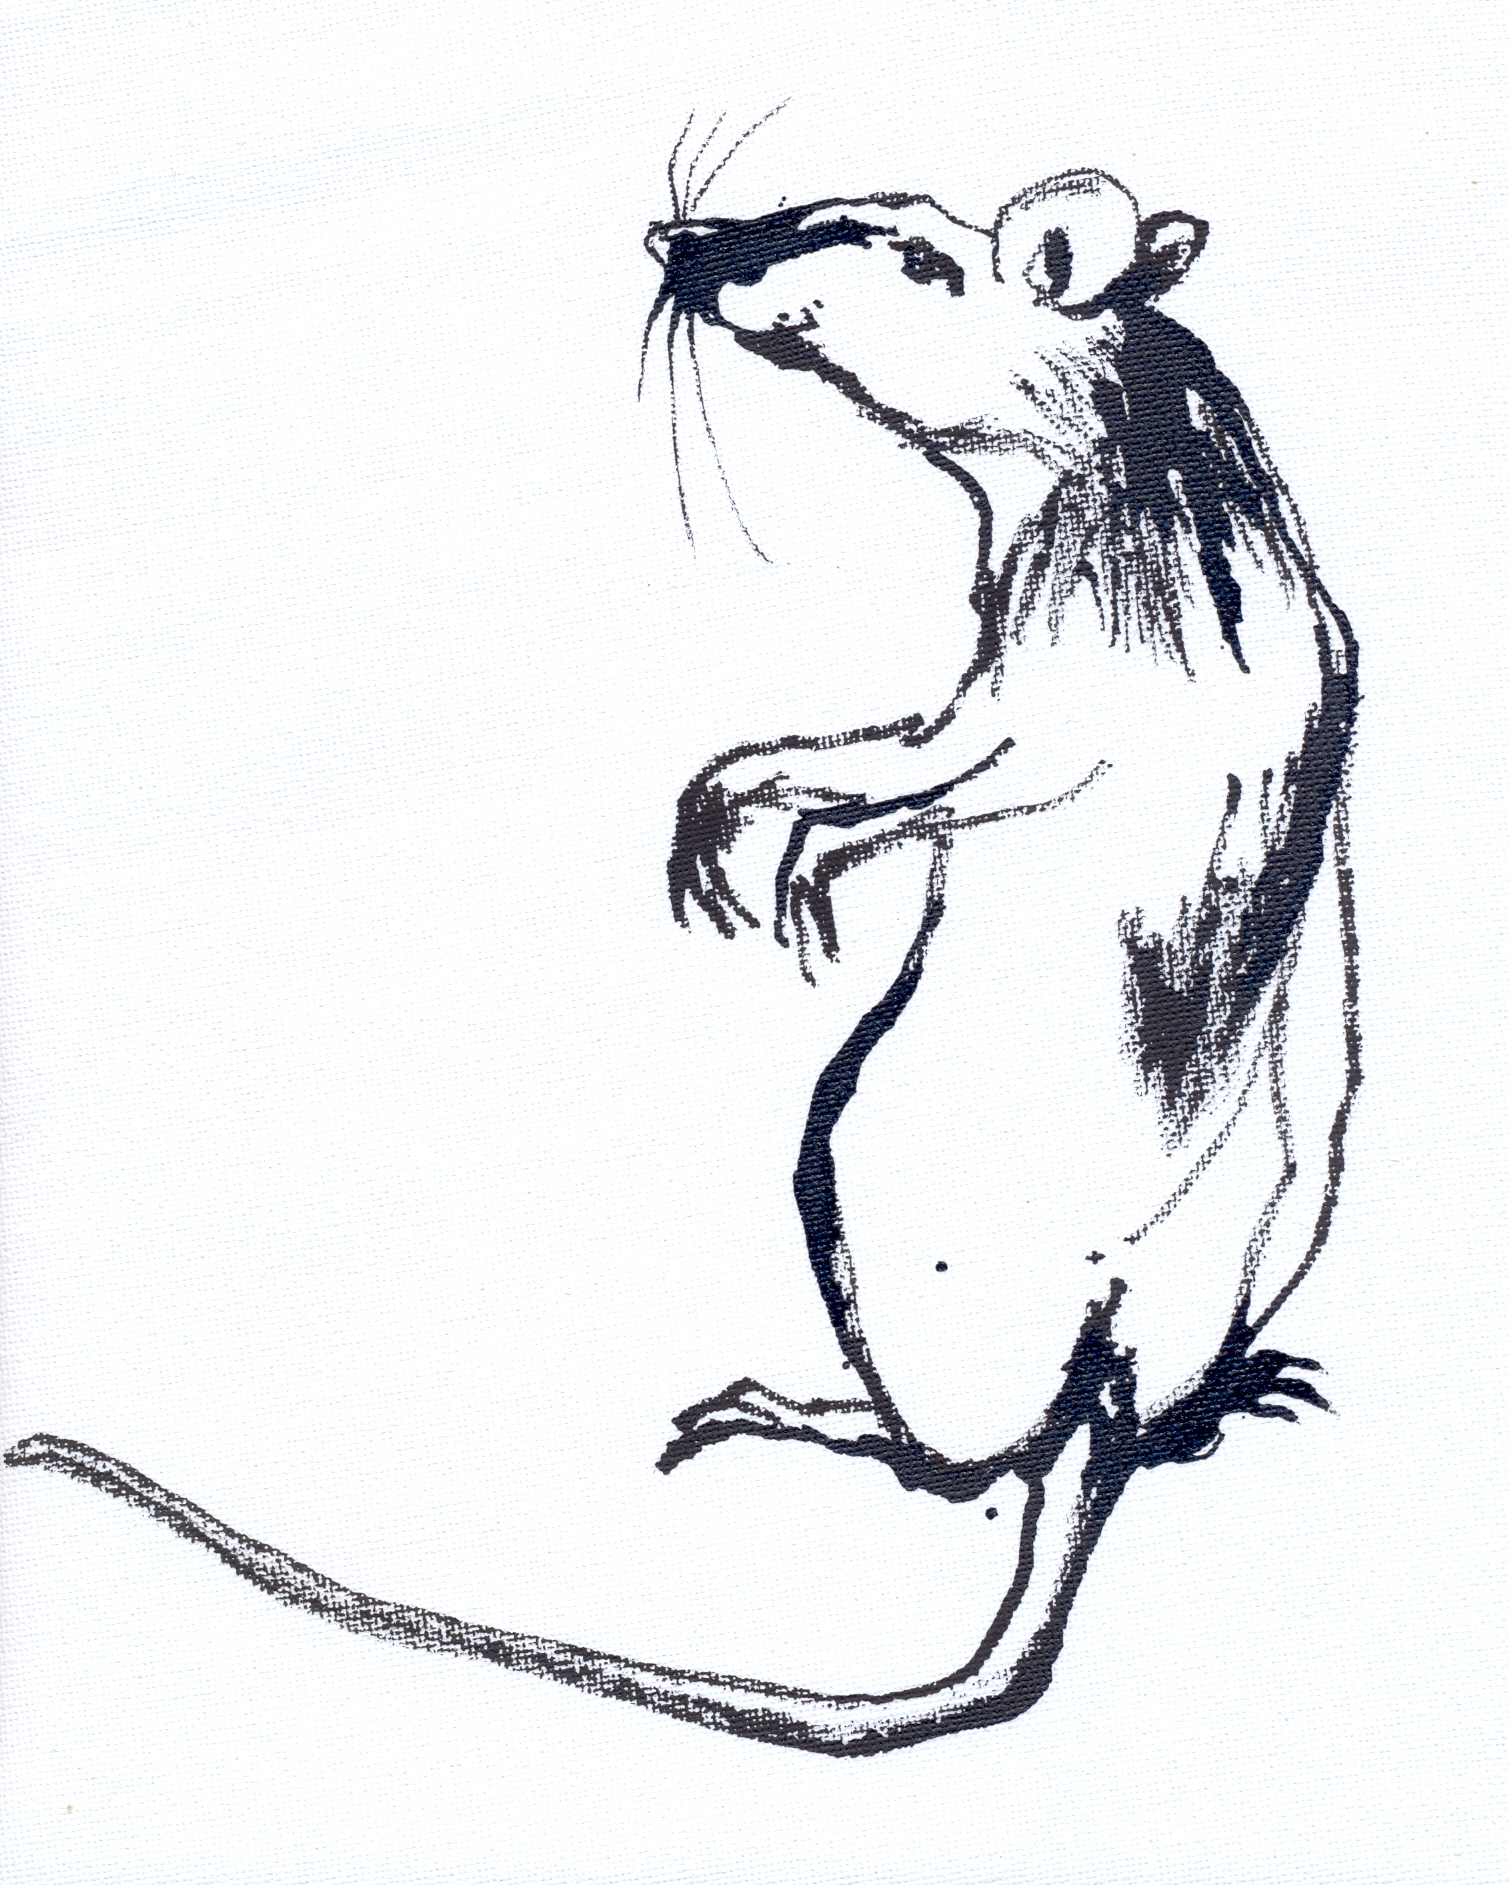 Kohlezeichnung: Ratte, die Männchen macht